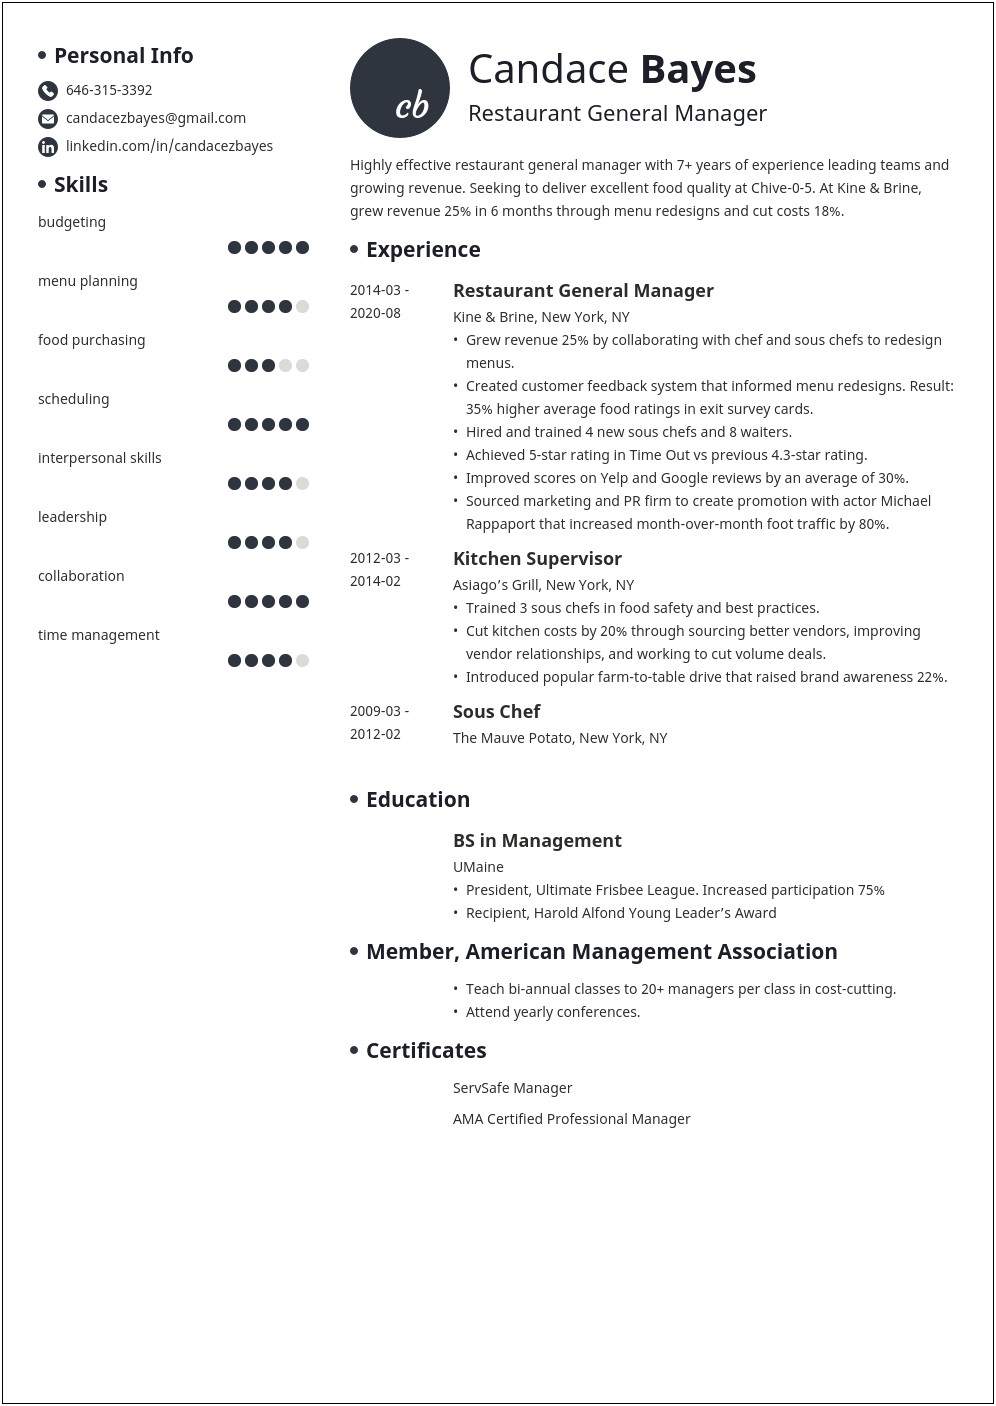 Resume Description Of Restaurant General Manager